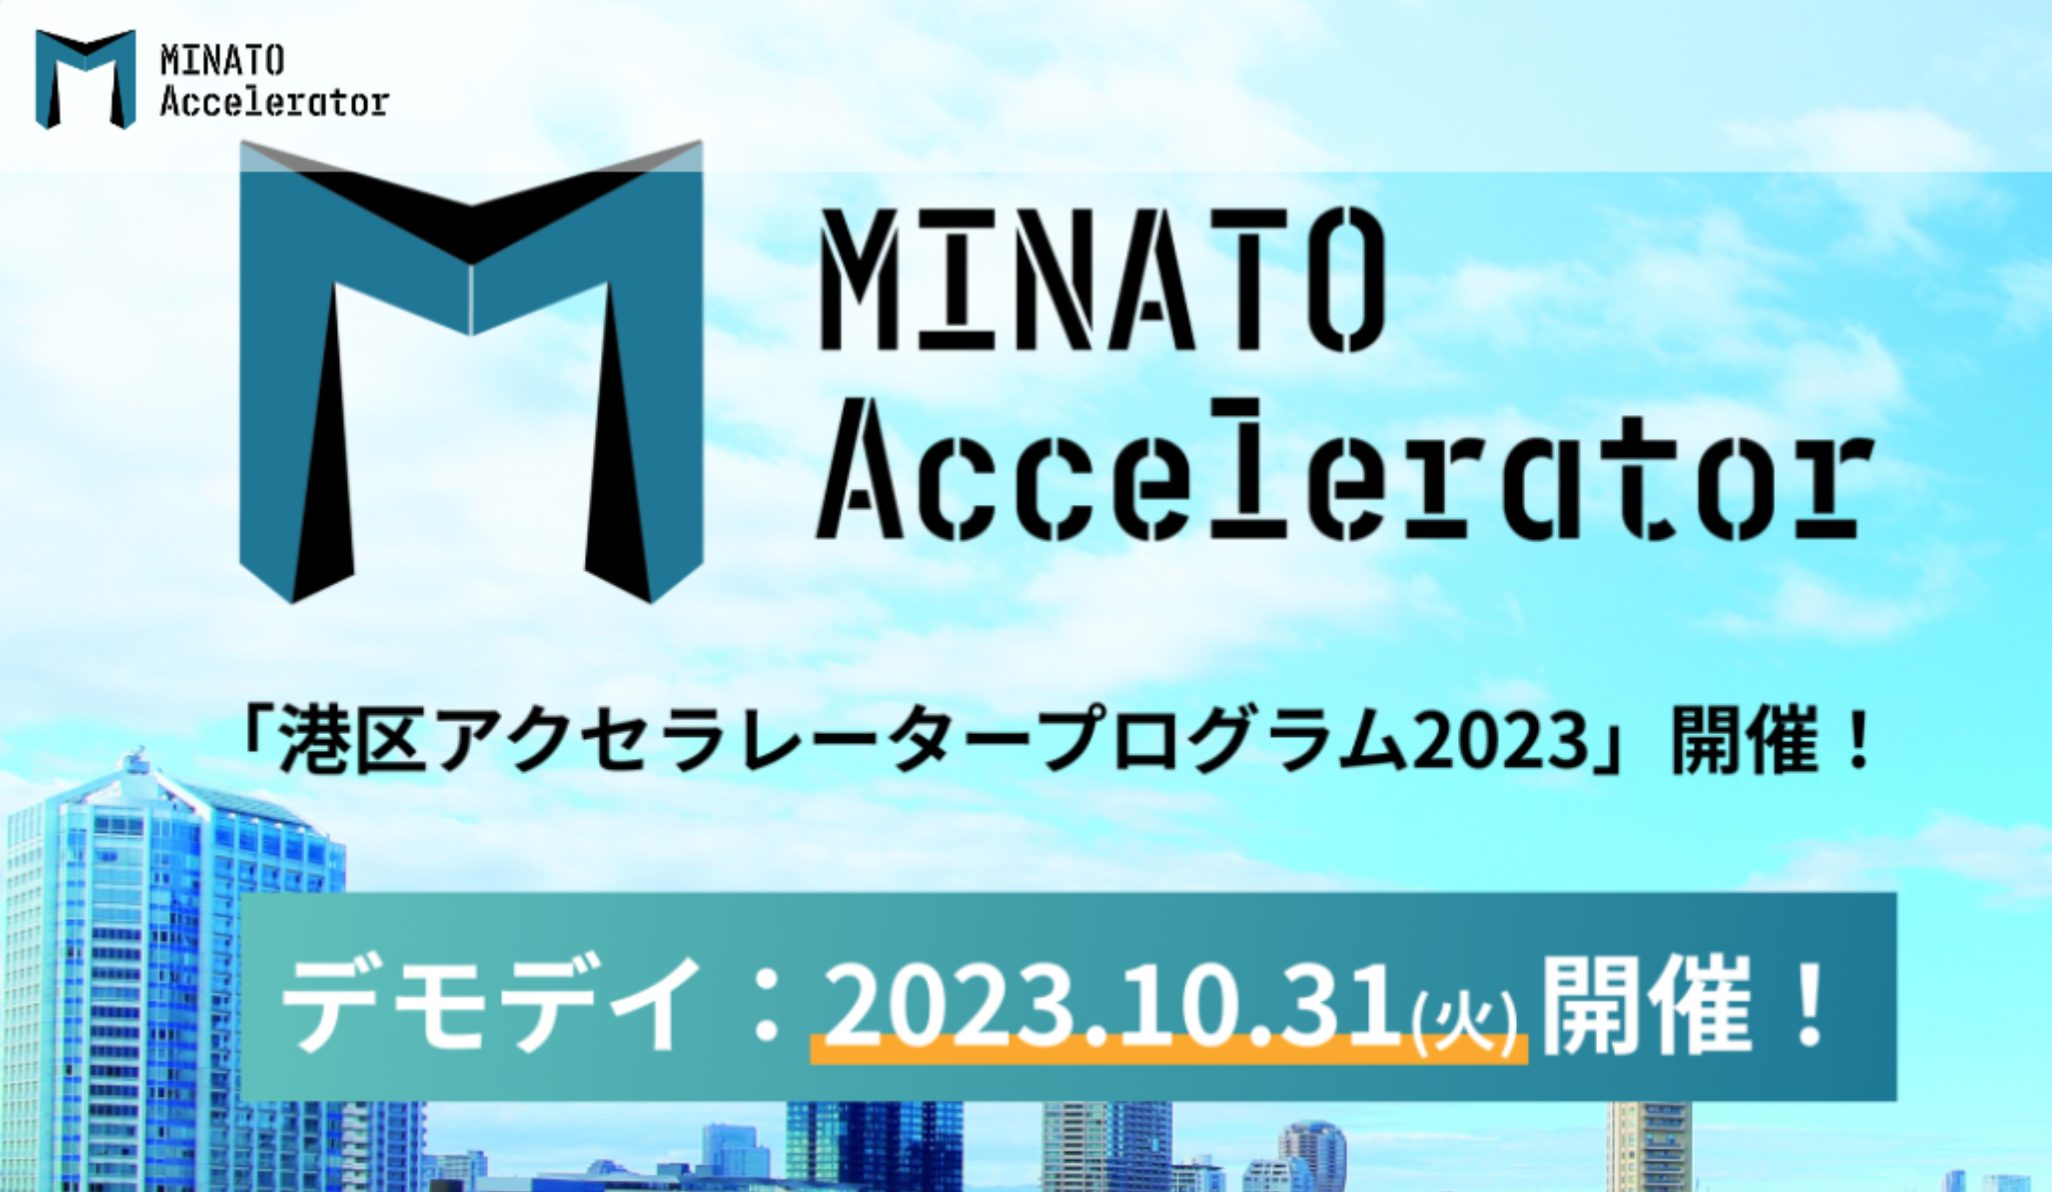 「MINATO Accelerator」メンターとして参加させていただきます